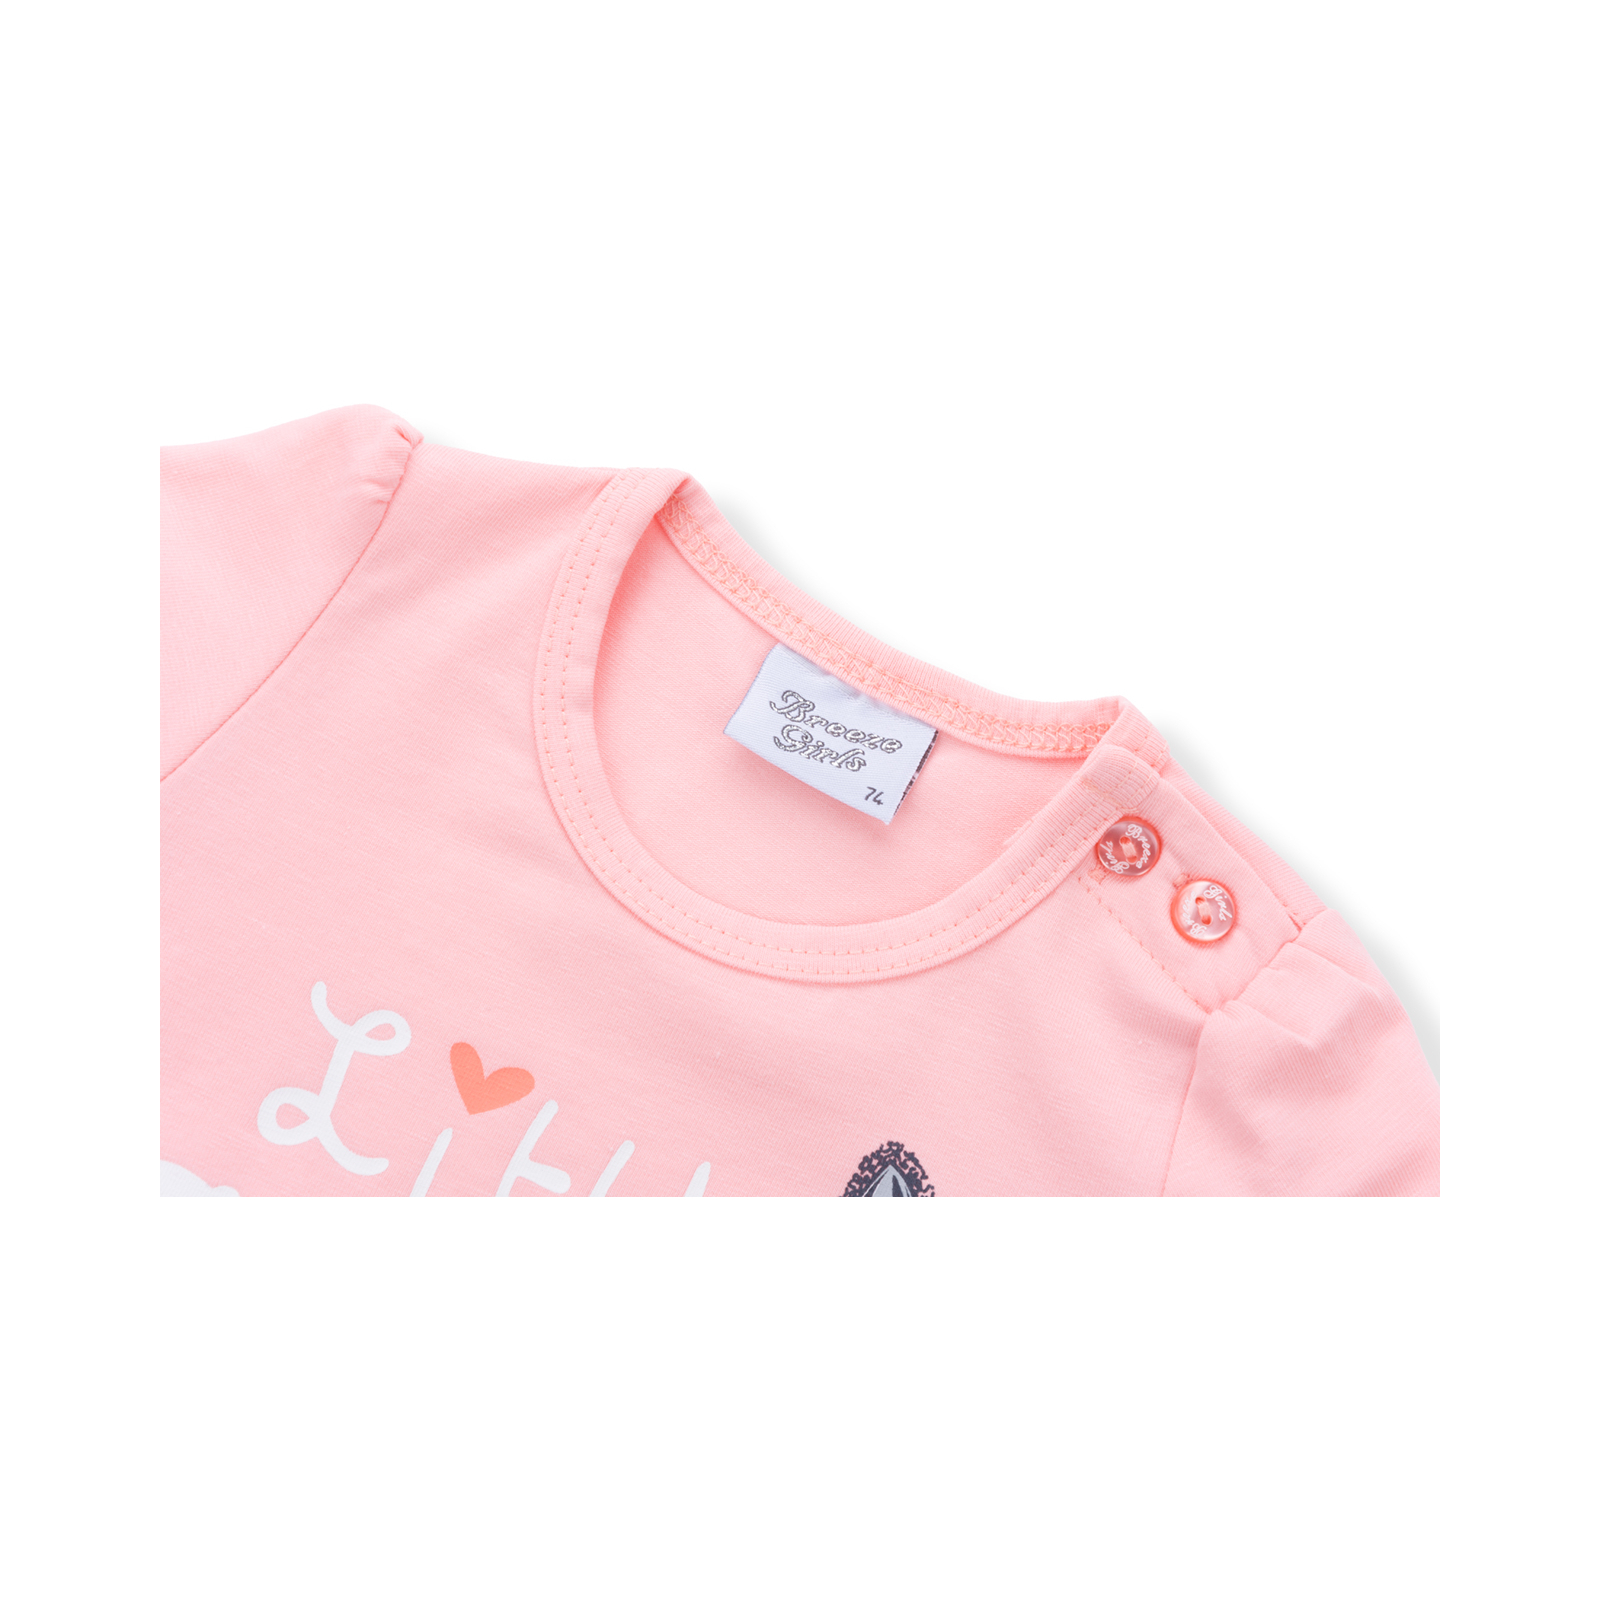 Набір дитячого одягу Breeze футболка з котиком та штанці з кишеньками (8983-92G-cream) зображення 5